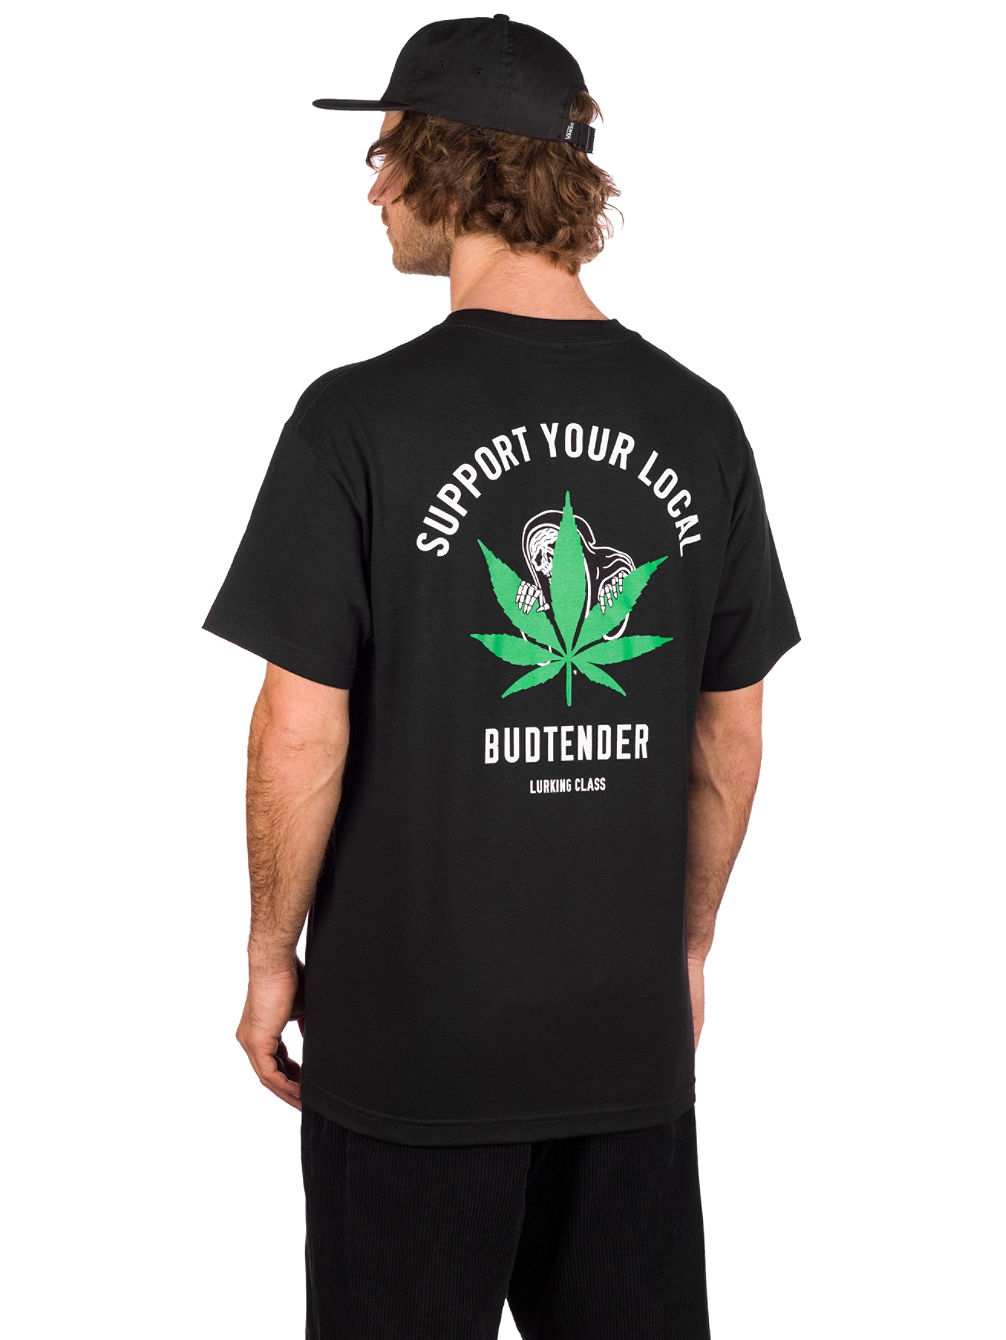 Budtender T-shirt